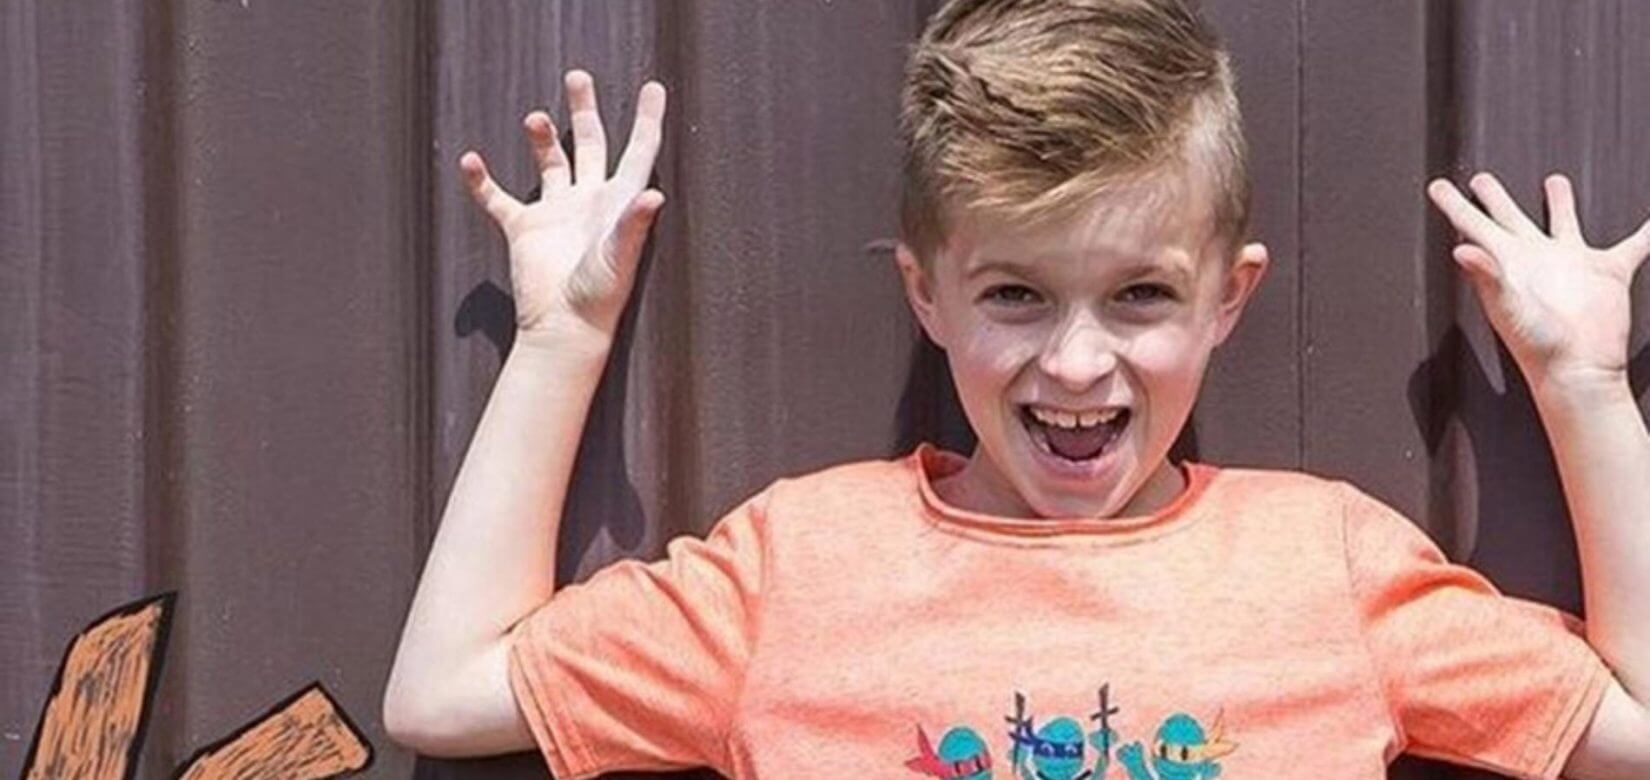 Τραγωδία: Ένα αγόρι μόλις 7 ετών αυτοκτόνησε γιατί δεν άντεξε το bullying των συμμαθητών του!